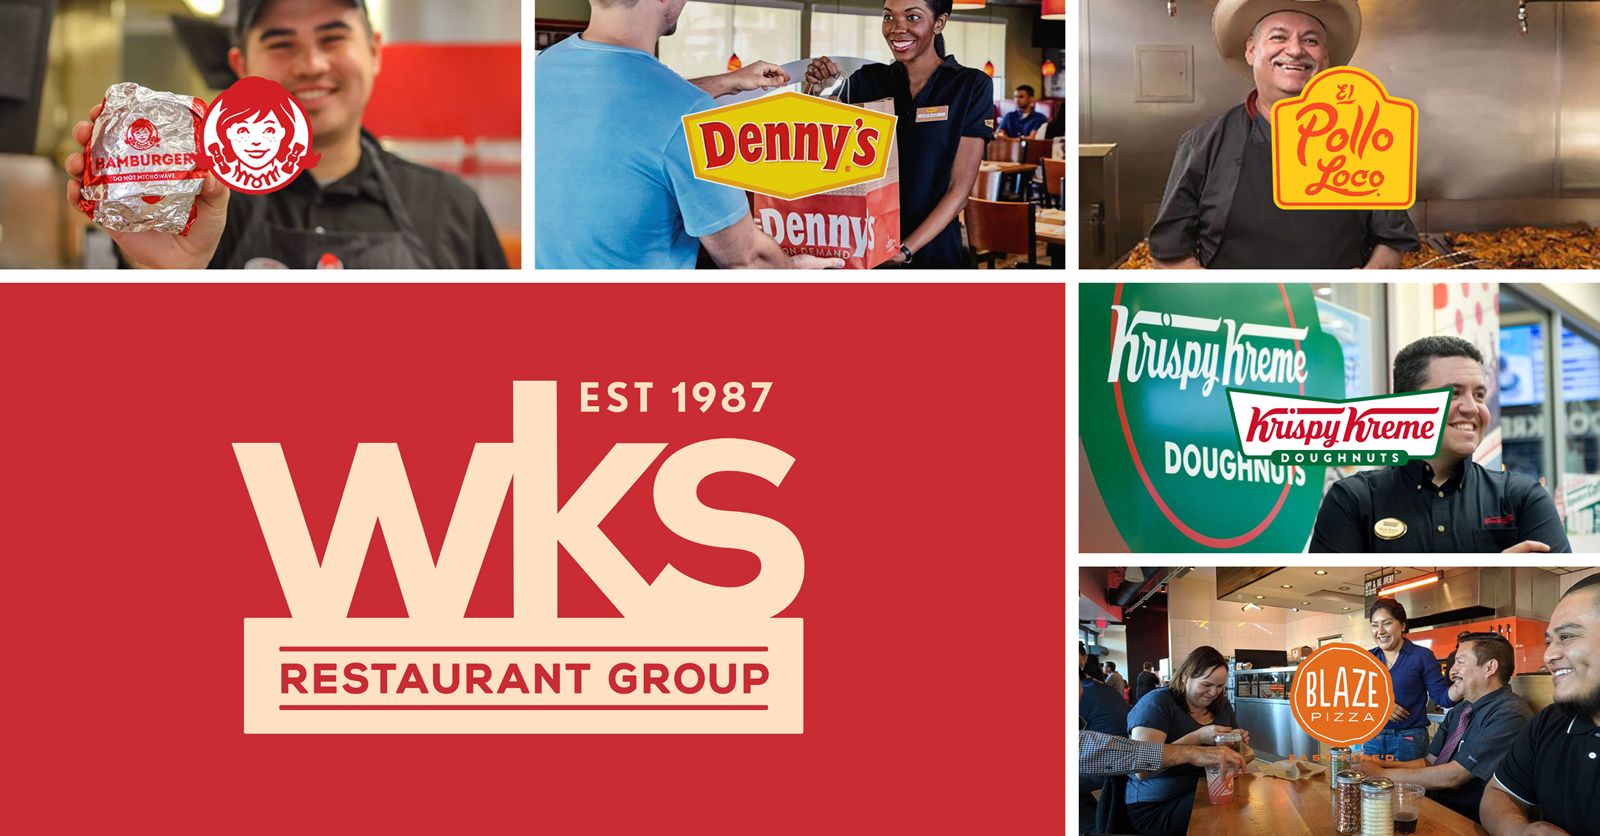 wks-restaurant-group-selectionne-interface-pour-deployer-des-services-de-jpg